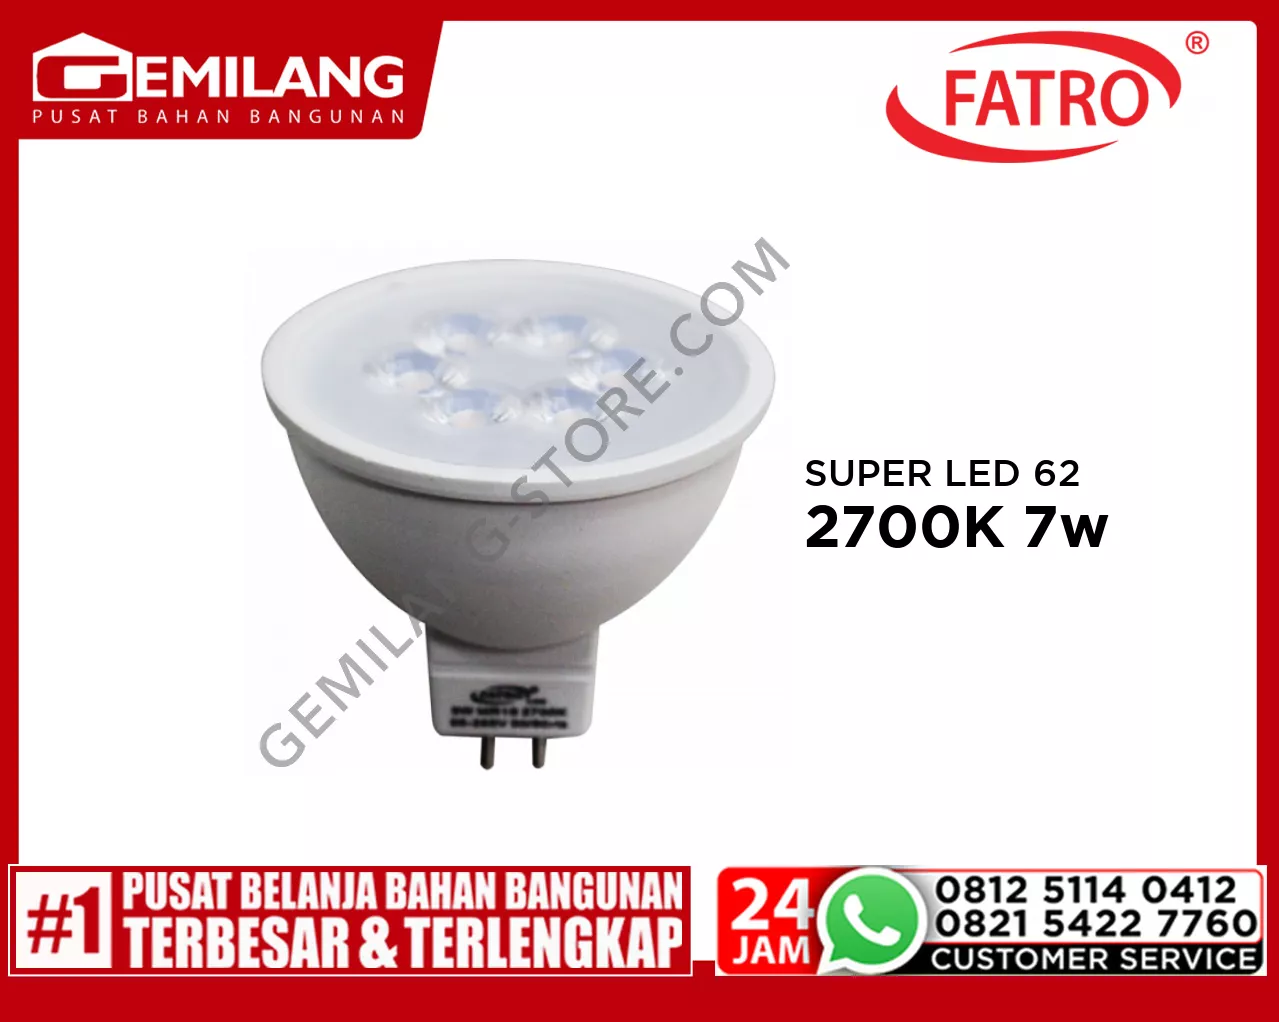 FATRO SUPER LED 60 MR16 220v 2700K 7w